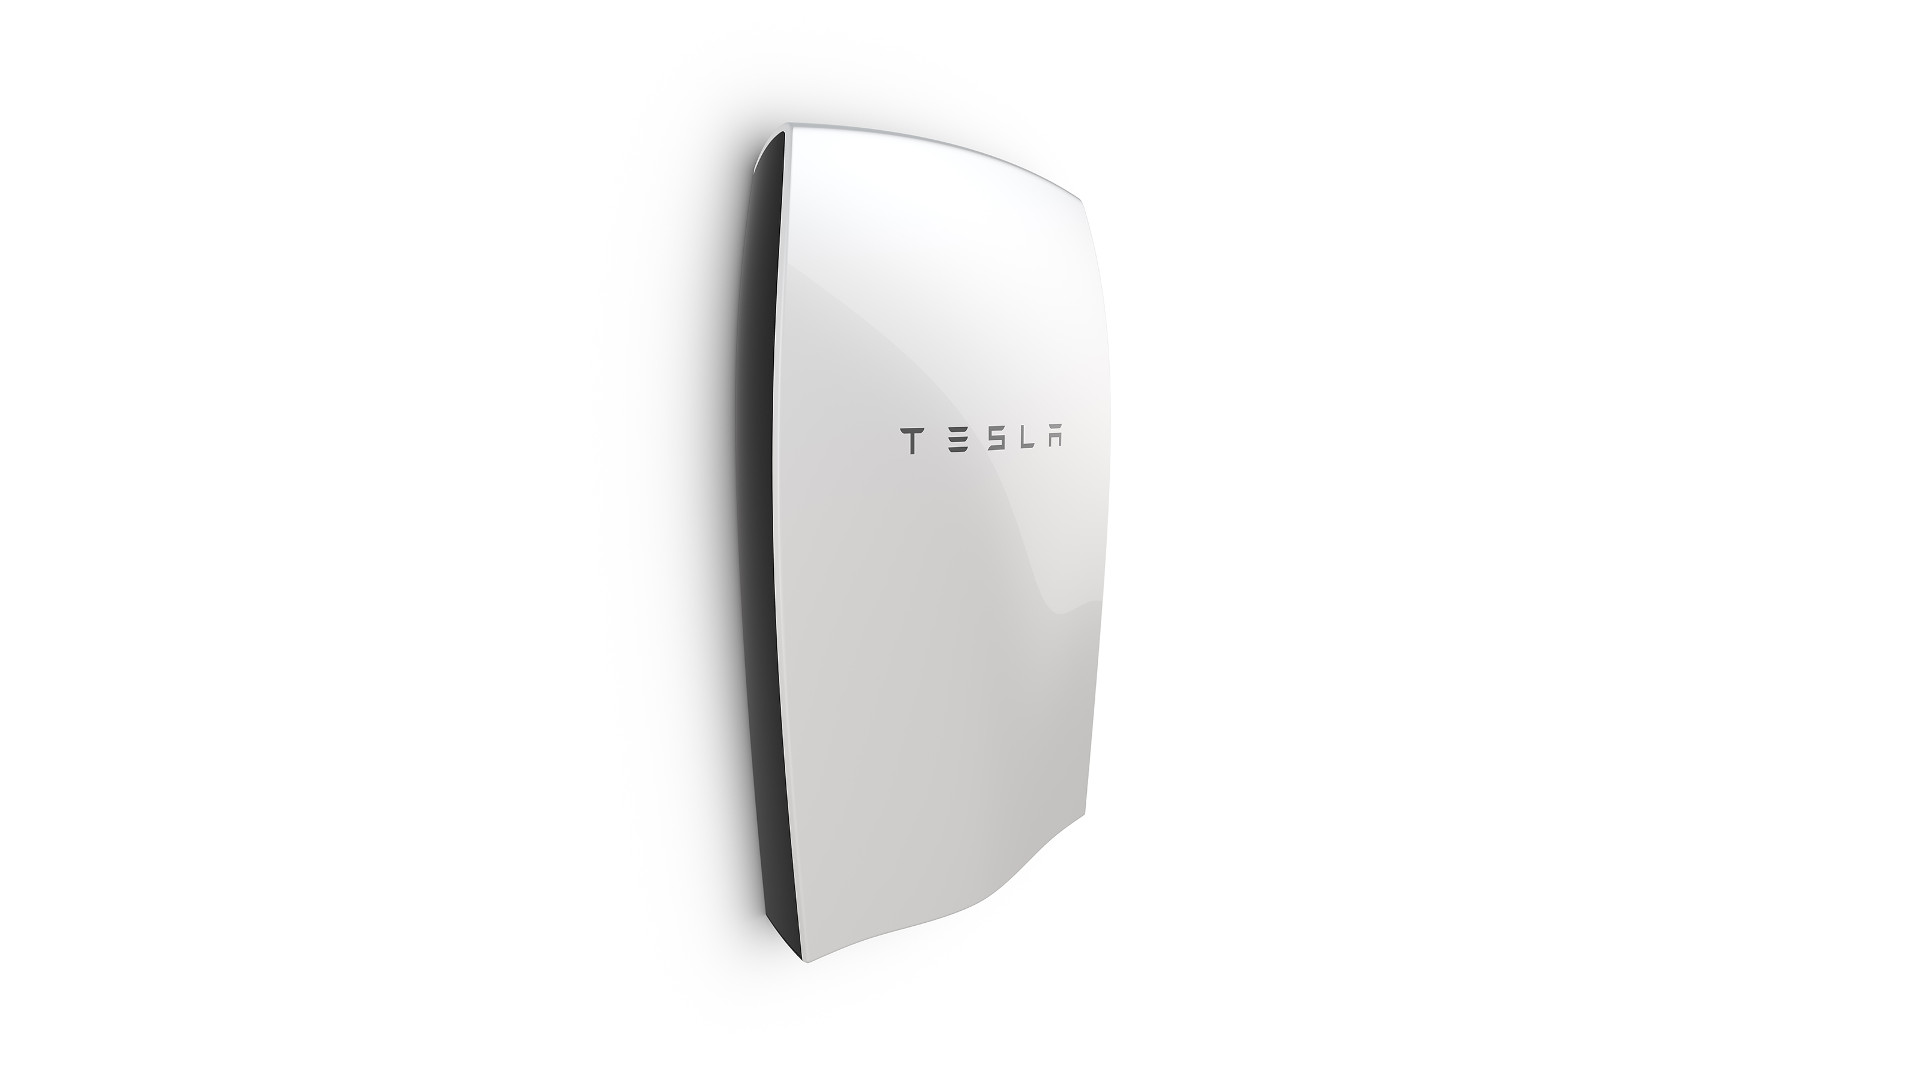 Die Tesla Powerwall speichert Strom für die Industrie und den Privathaushalt. Bildquelle: Tesla Motors